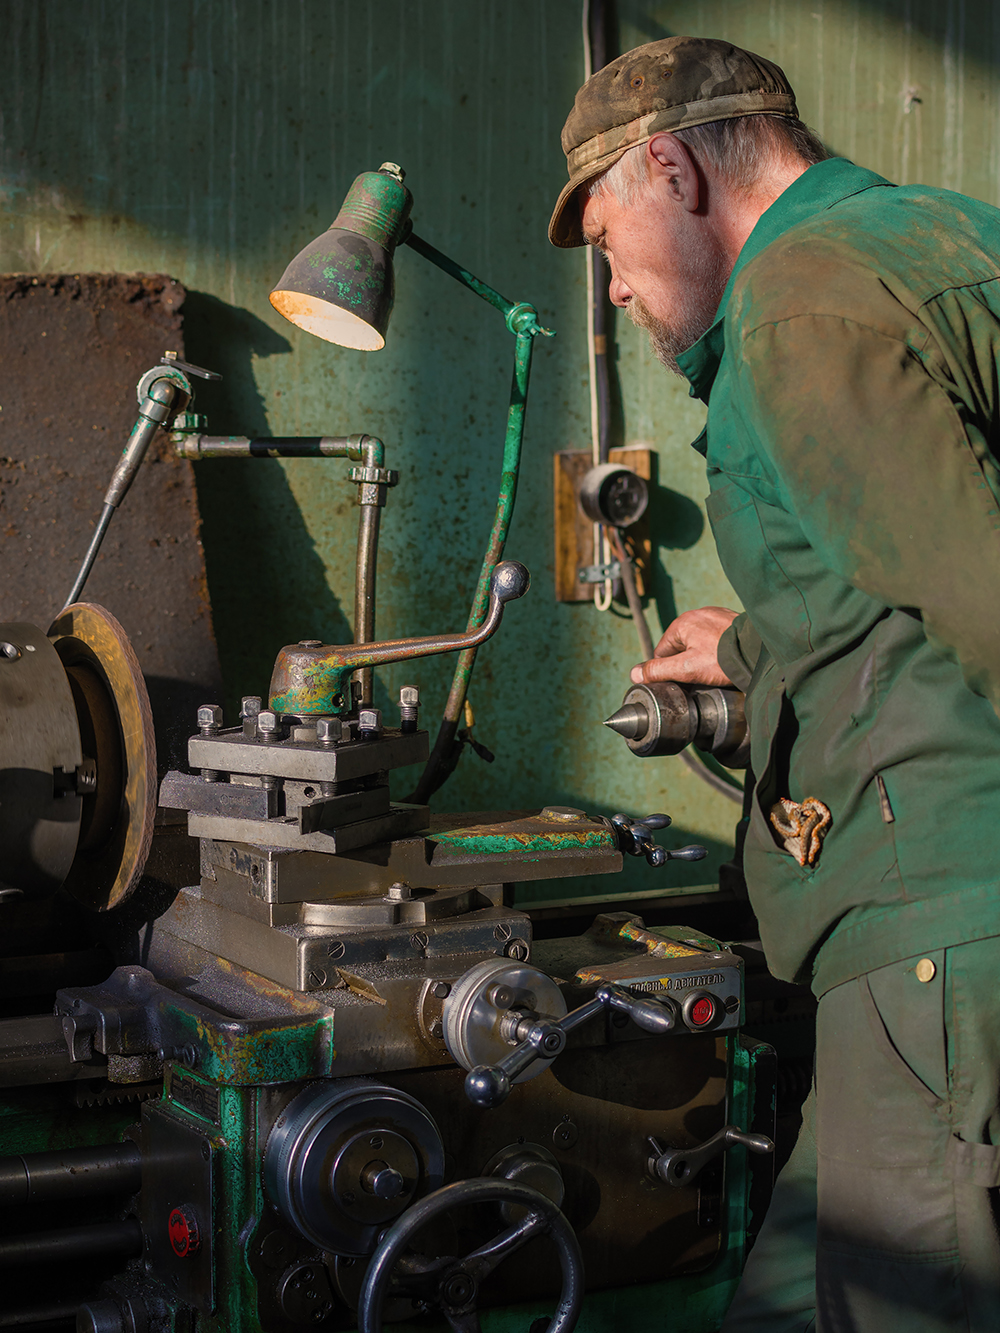 Мастер протачивает тормозной диск на токарном станке. Фото: Karasev Viktor / Shutterstock